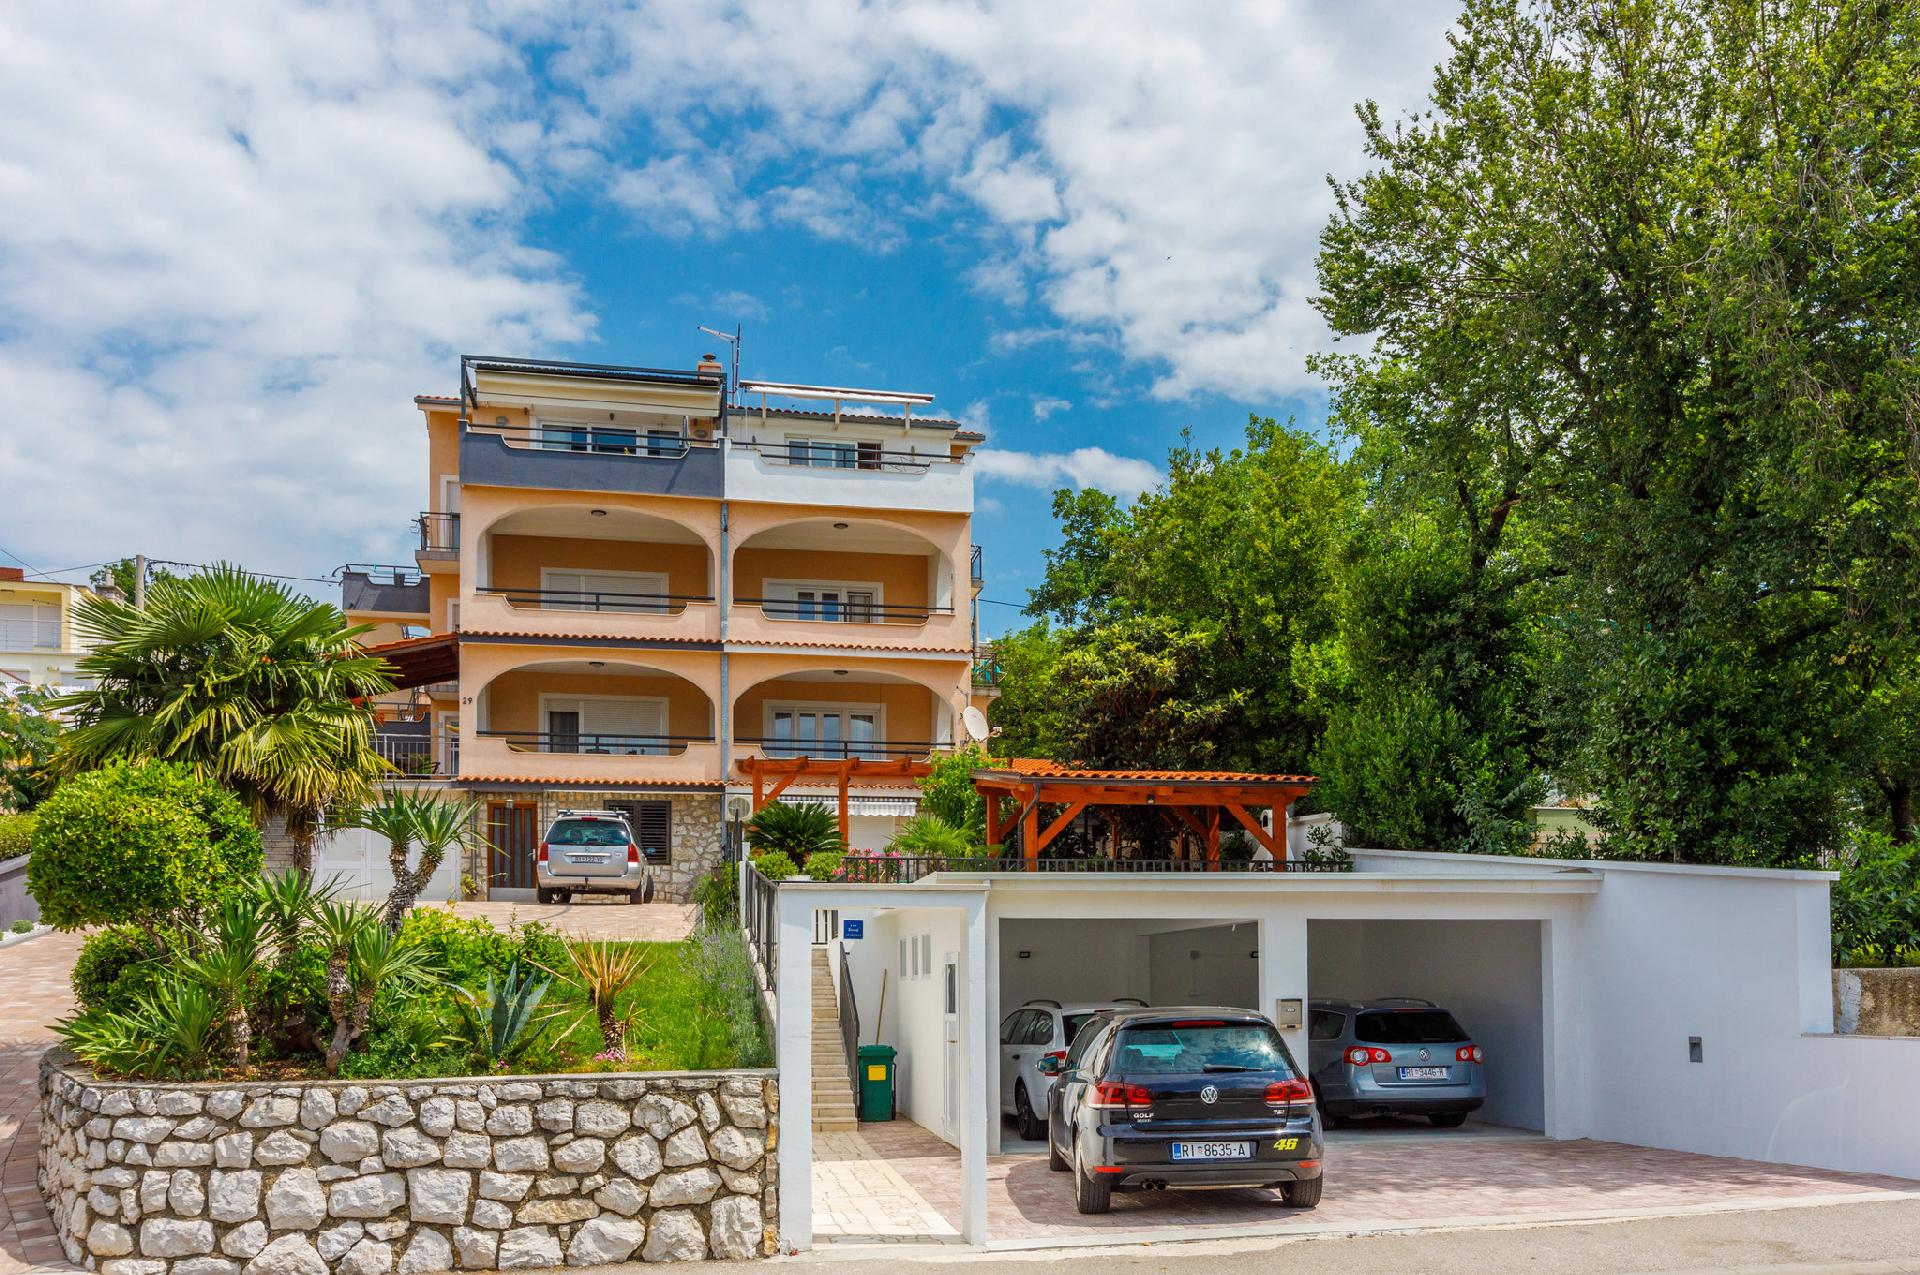 Ferienwohnung für 9 Personen ca. 95 m² i  in Kroatien